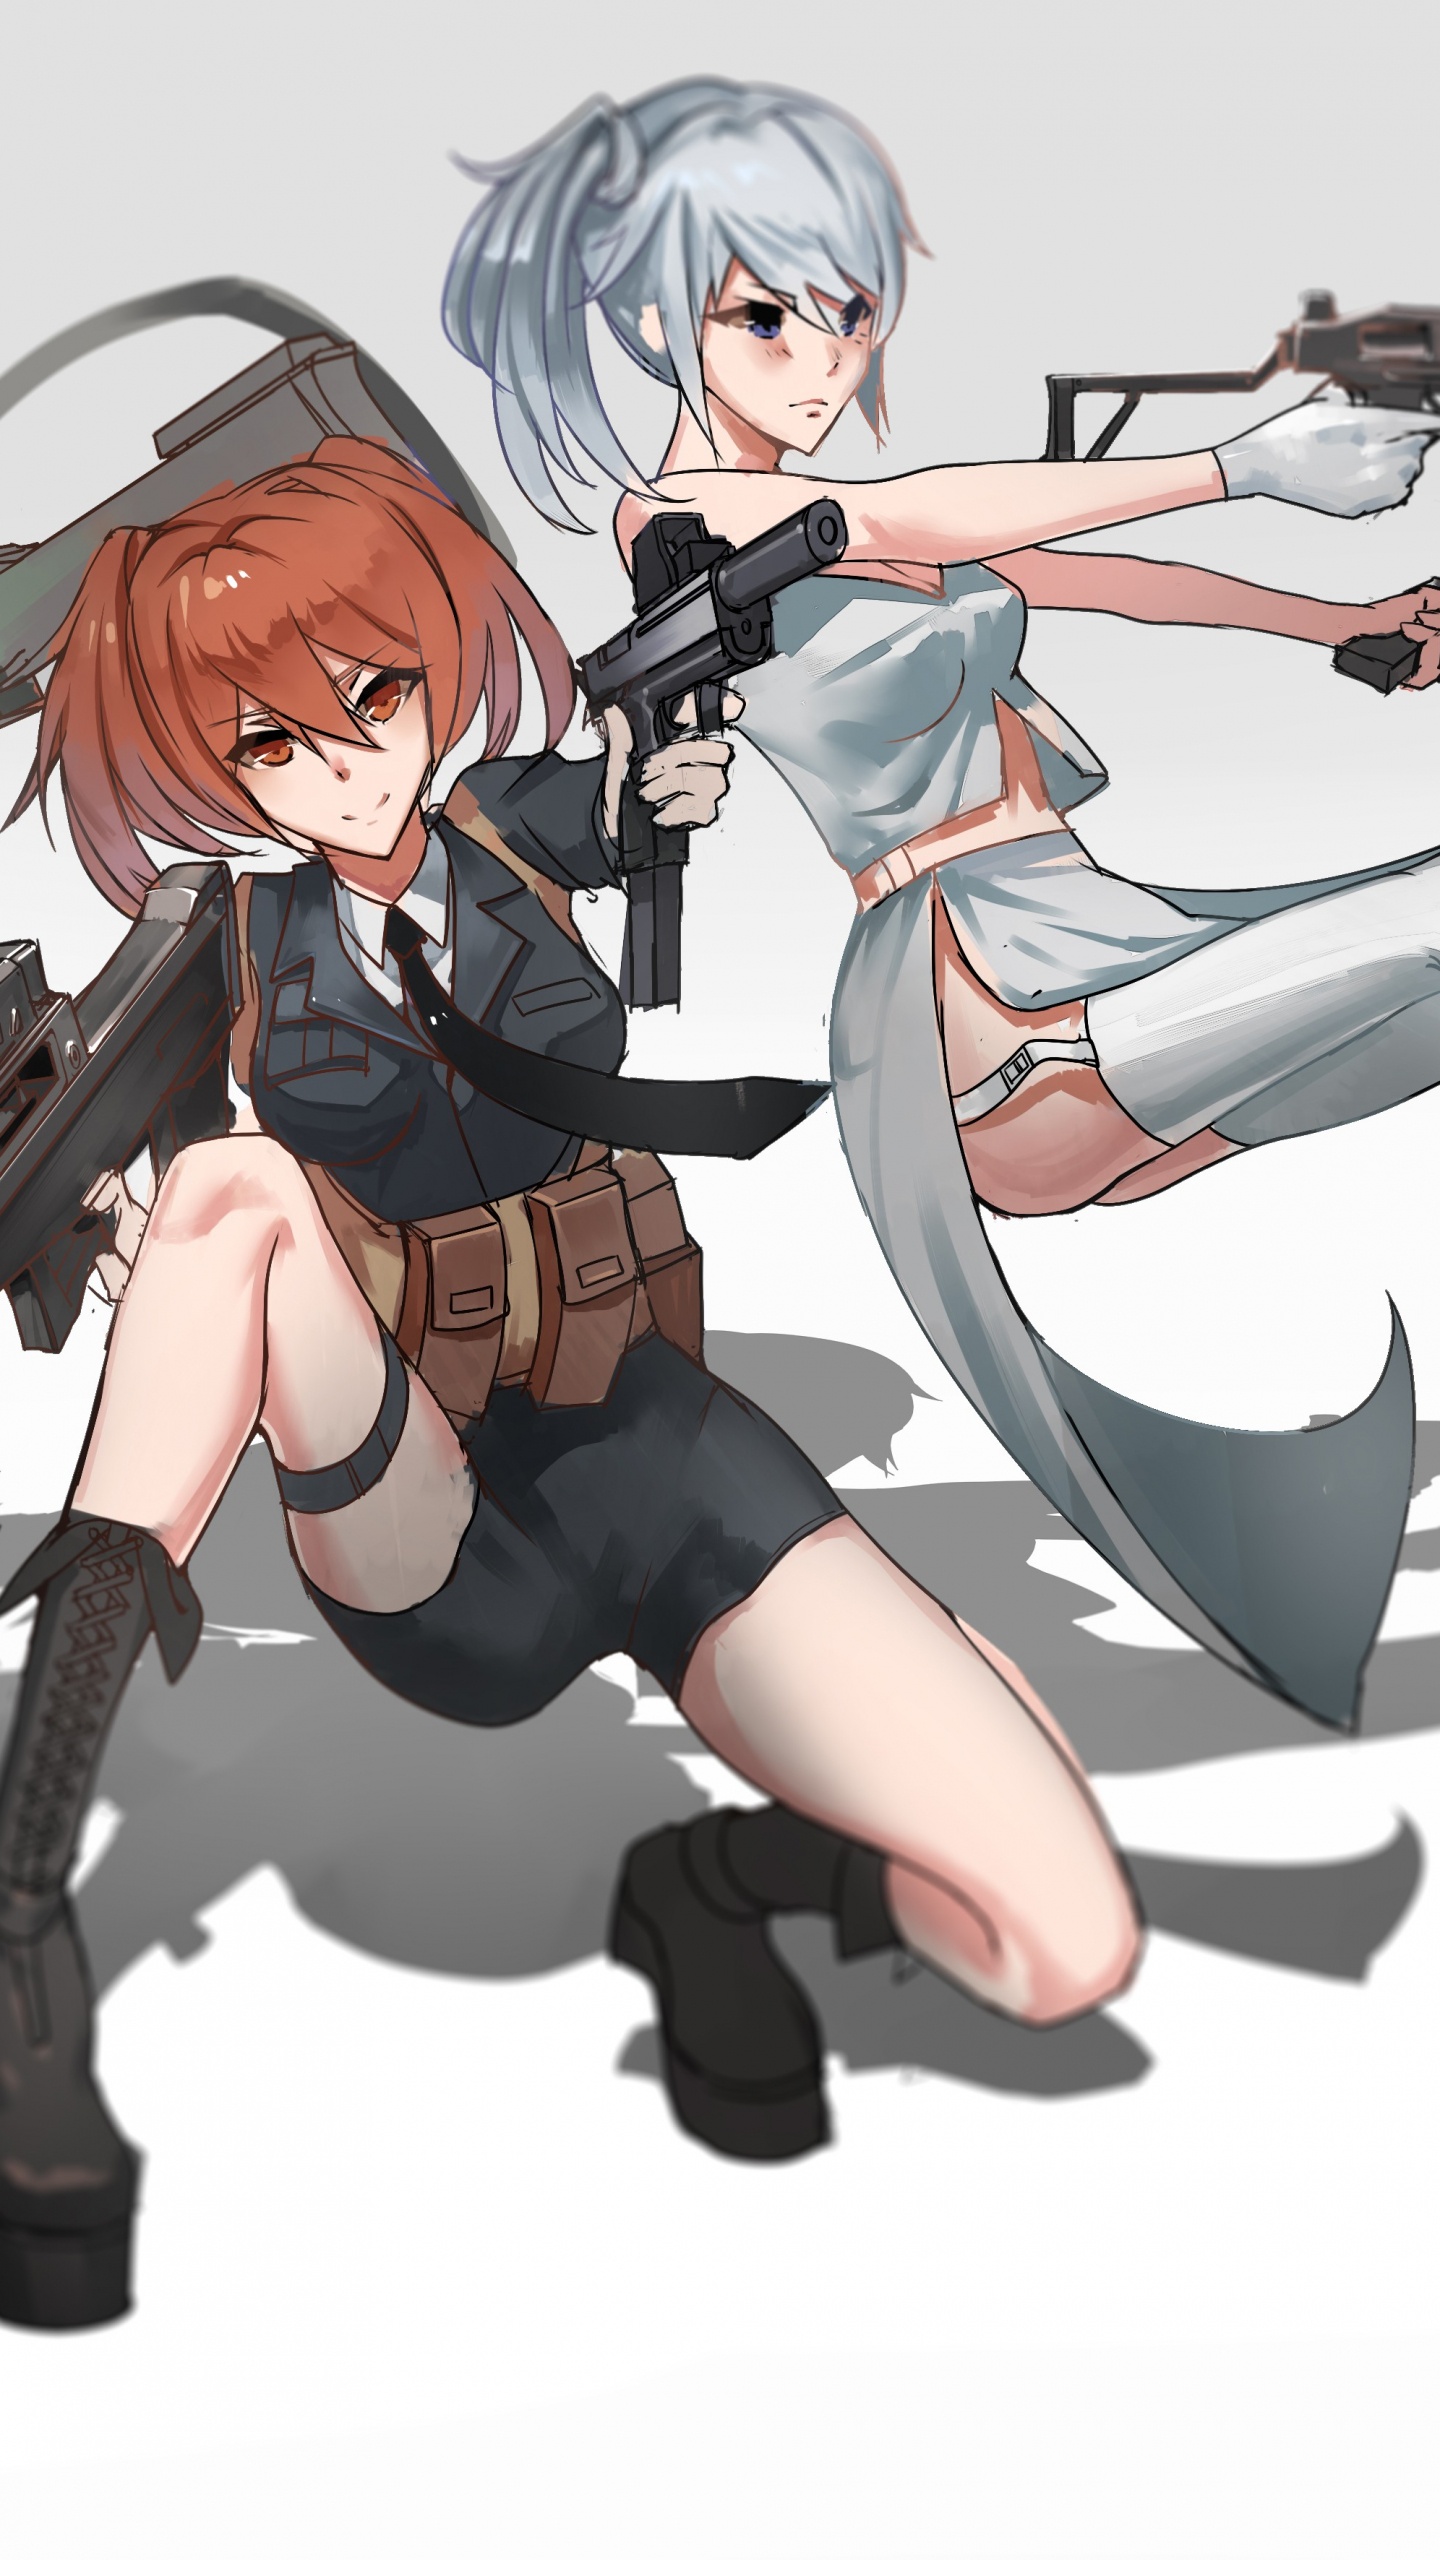 Mujer en Vestido Blanco y Negro Sosteniendo un Personaje de Anime de Rifle. Wallpaper in 1440x2560 Resolution